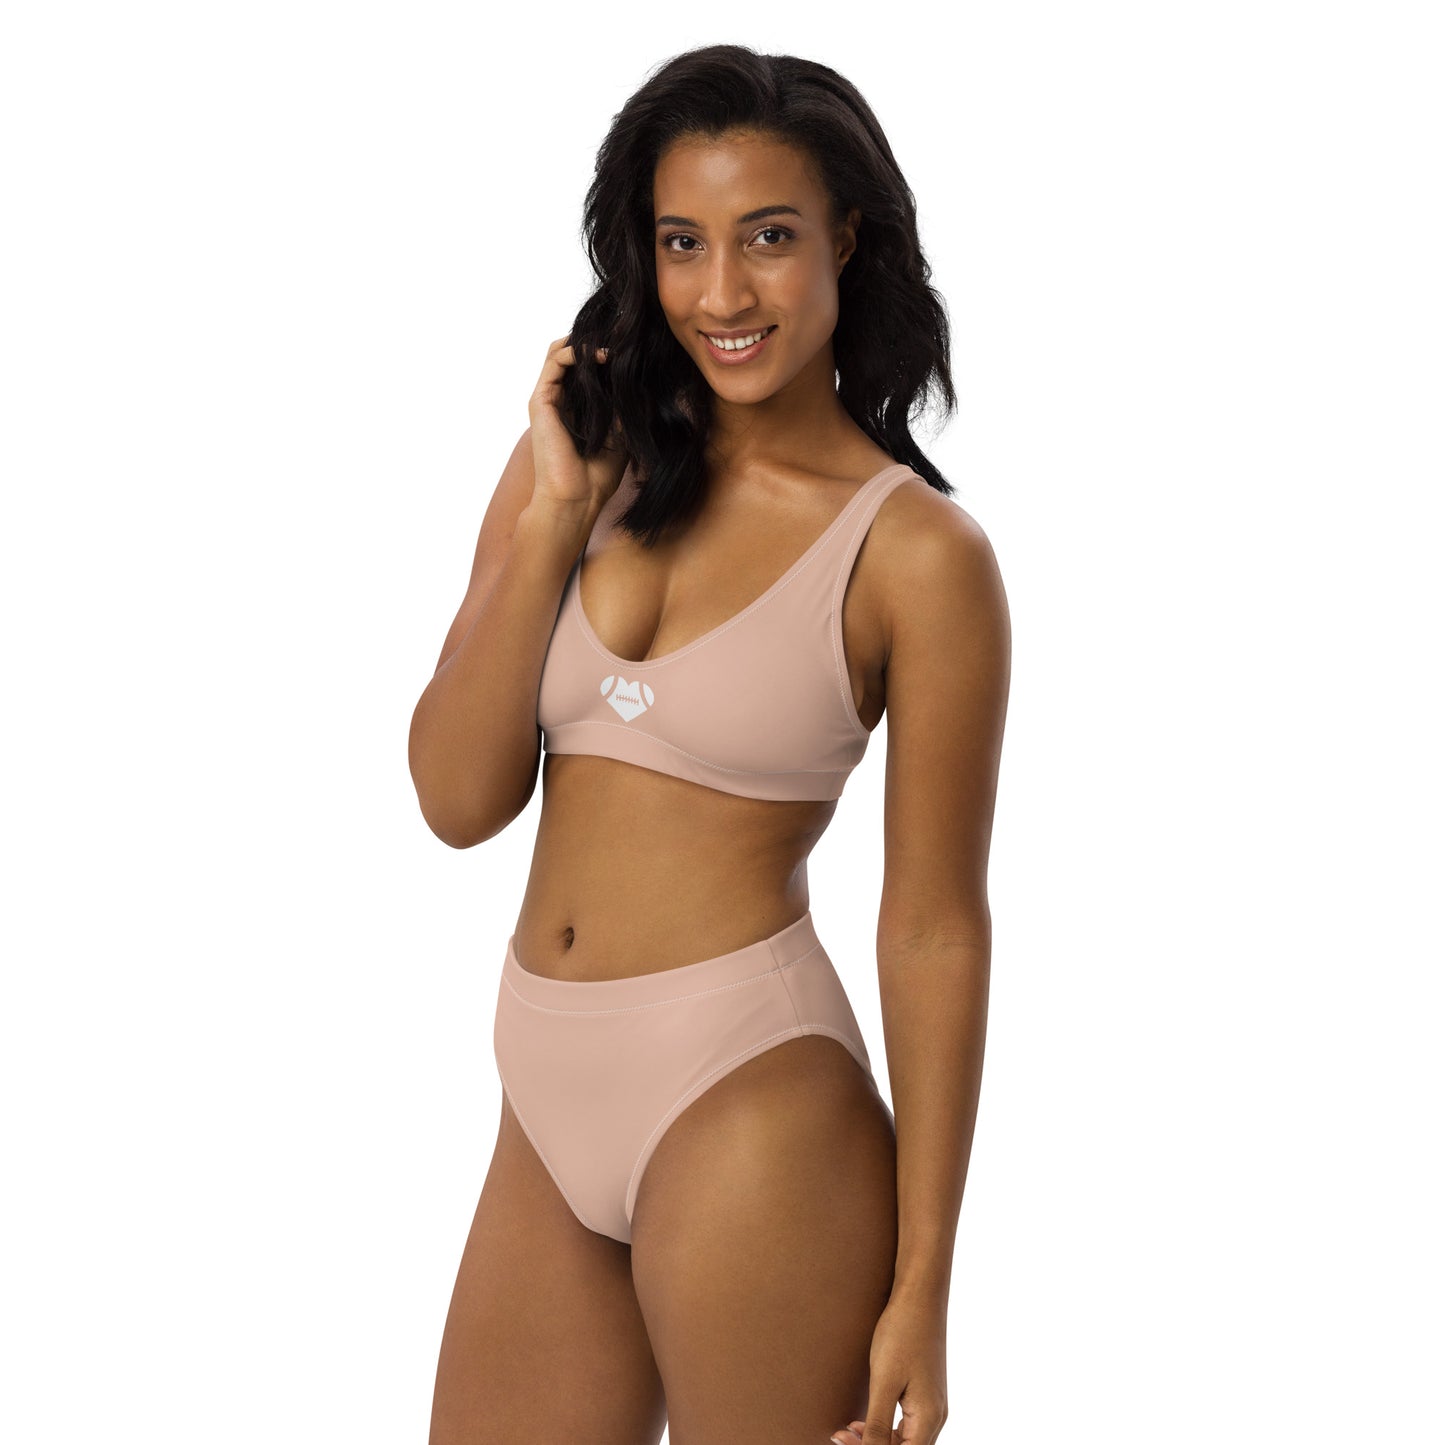 AFA Basics Neutral Zinnwaldite High-waisted Bikini